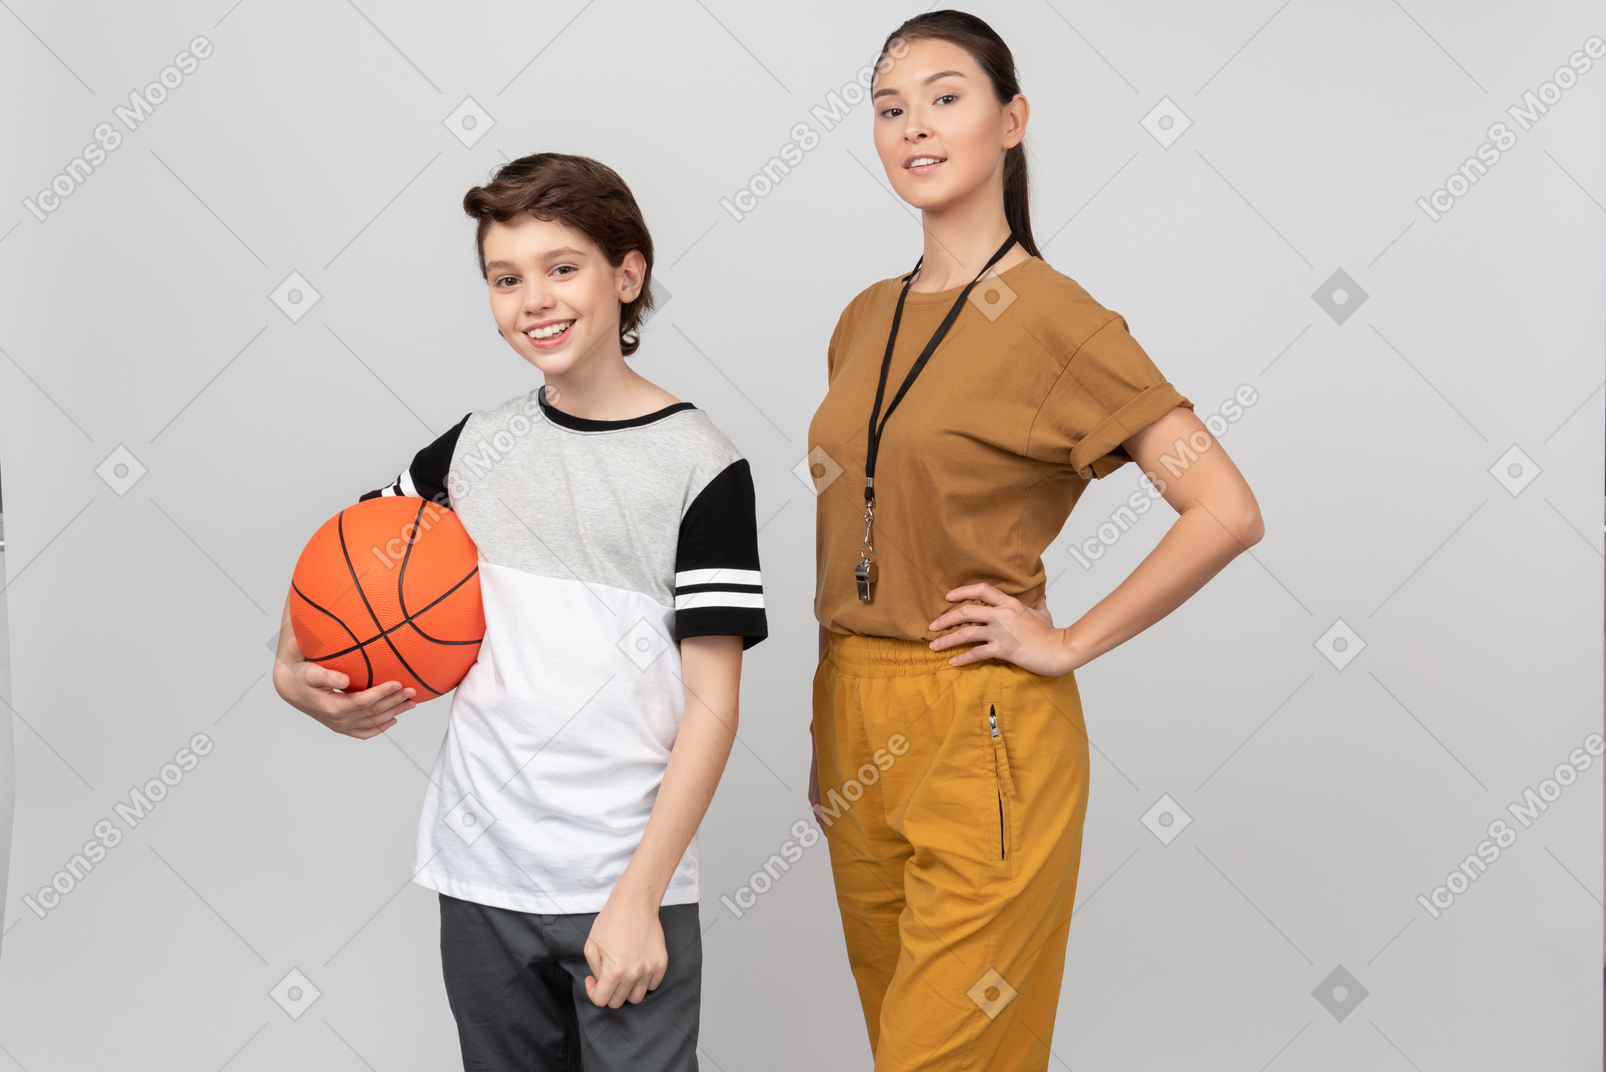 バスケットボールのボールを保持している生徒の隣に立っている体育教師